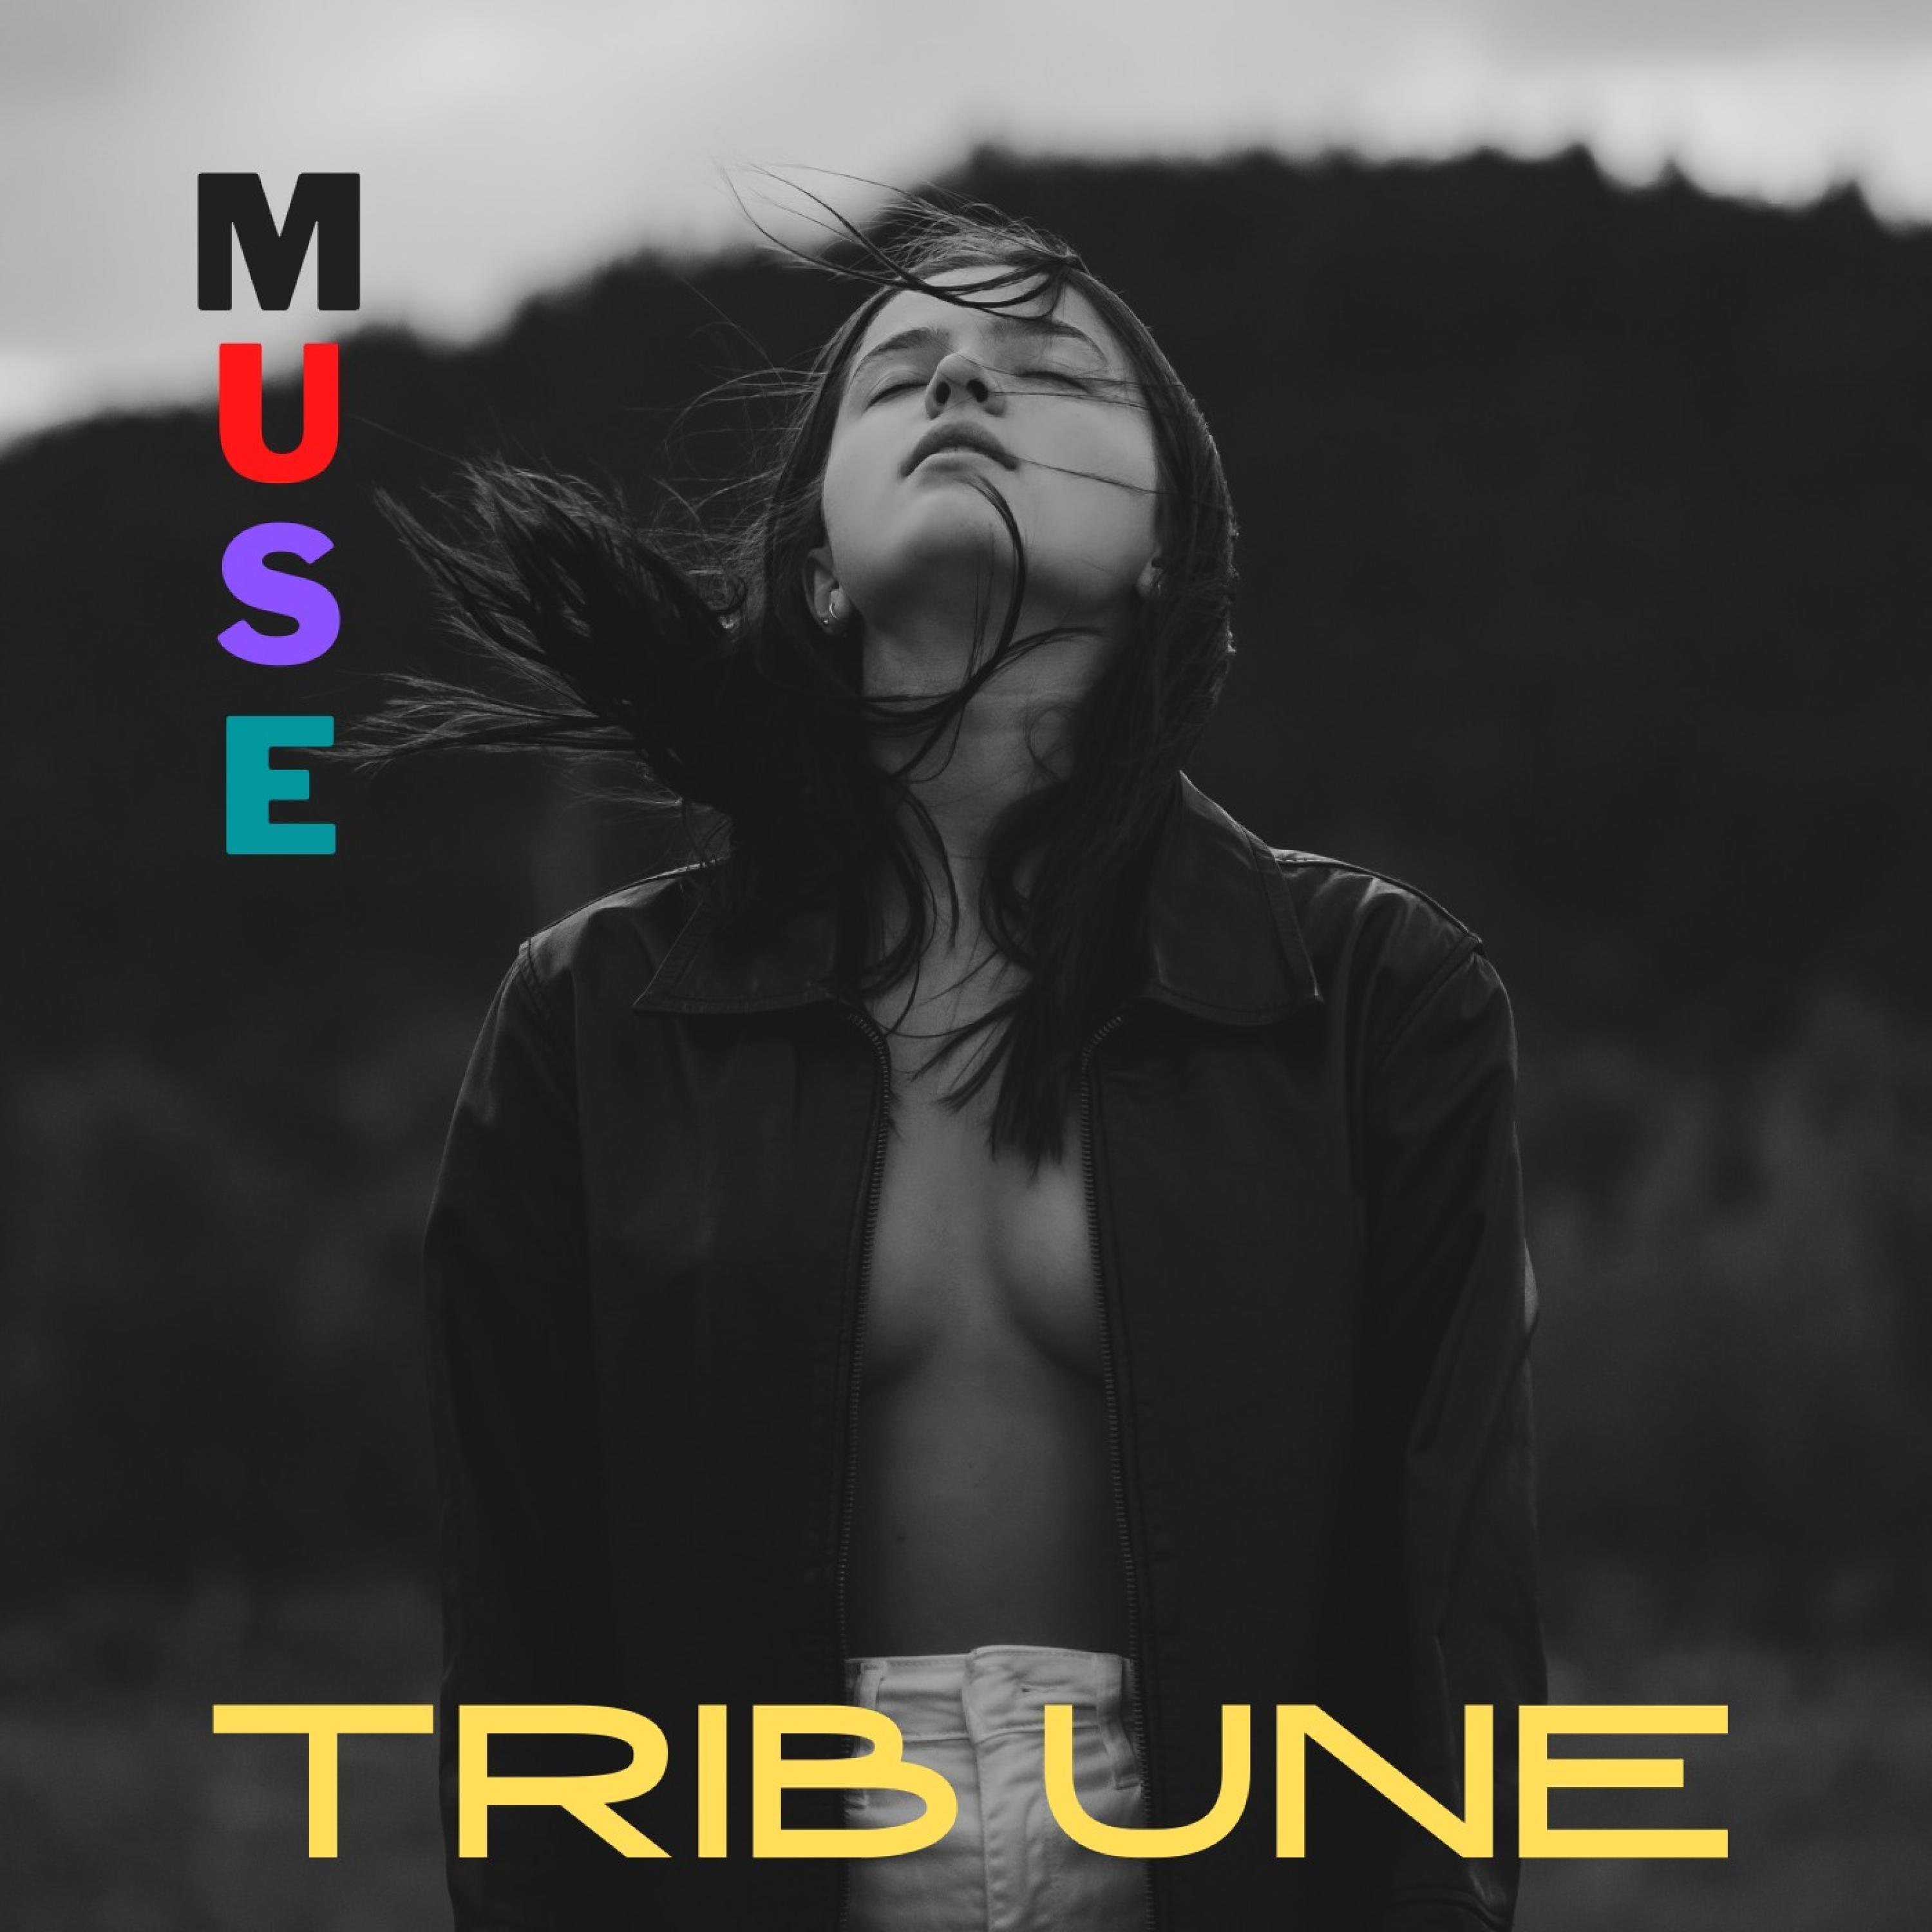 Tribune - Now I Found you